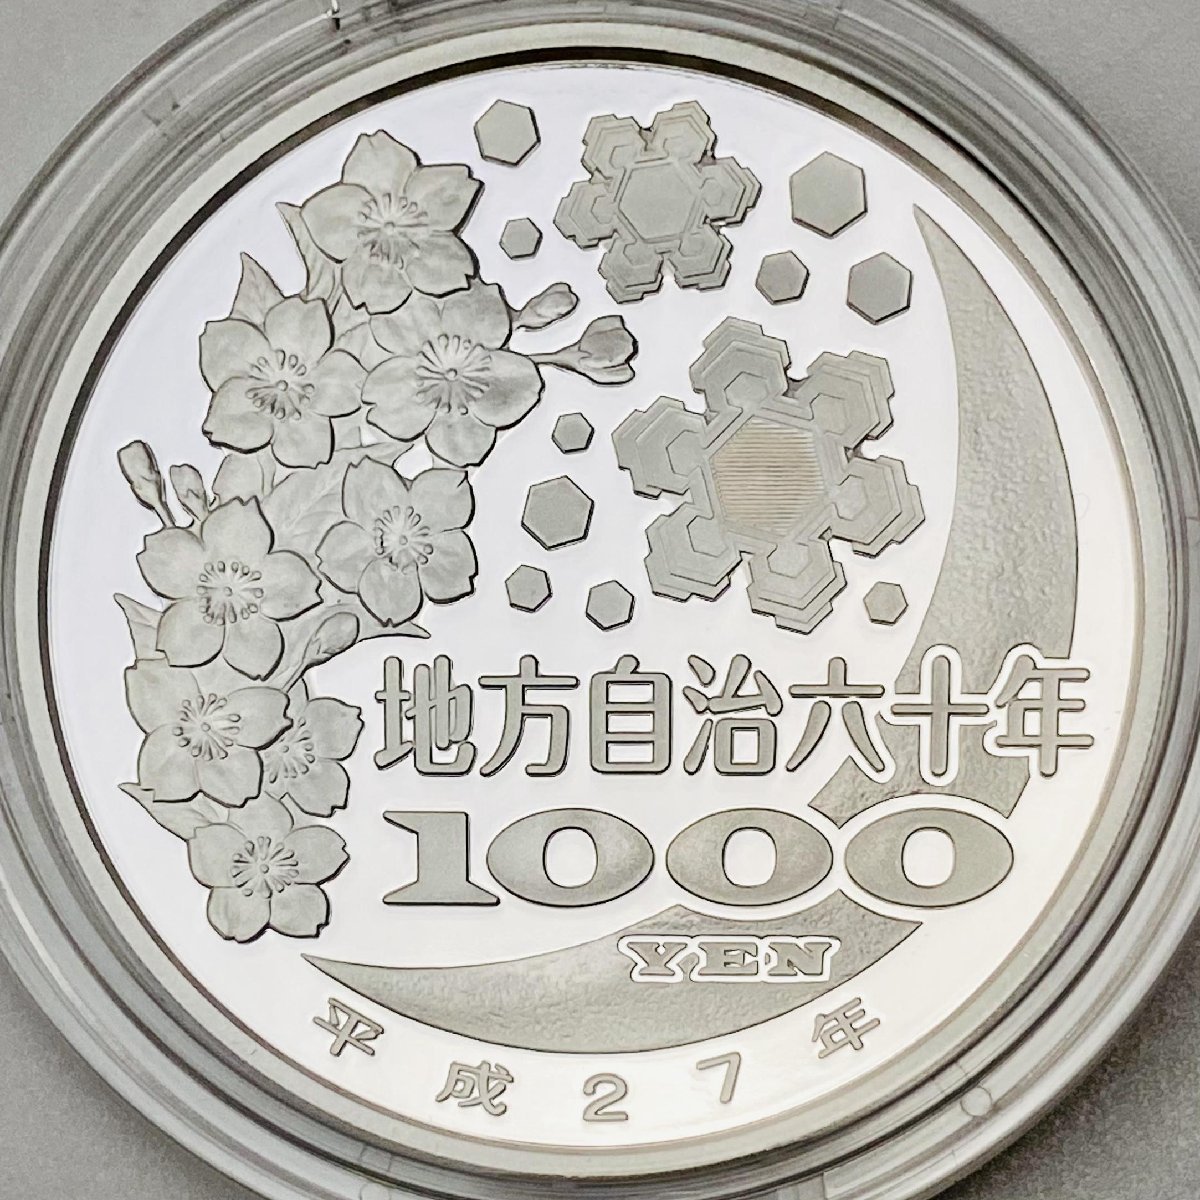 地方自治法施行60周年記念貨幣千円銀貨幣プルーフ貨幣セットAセット 